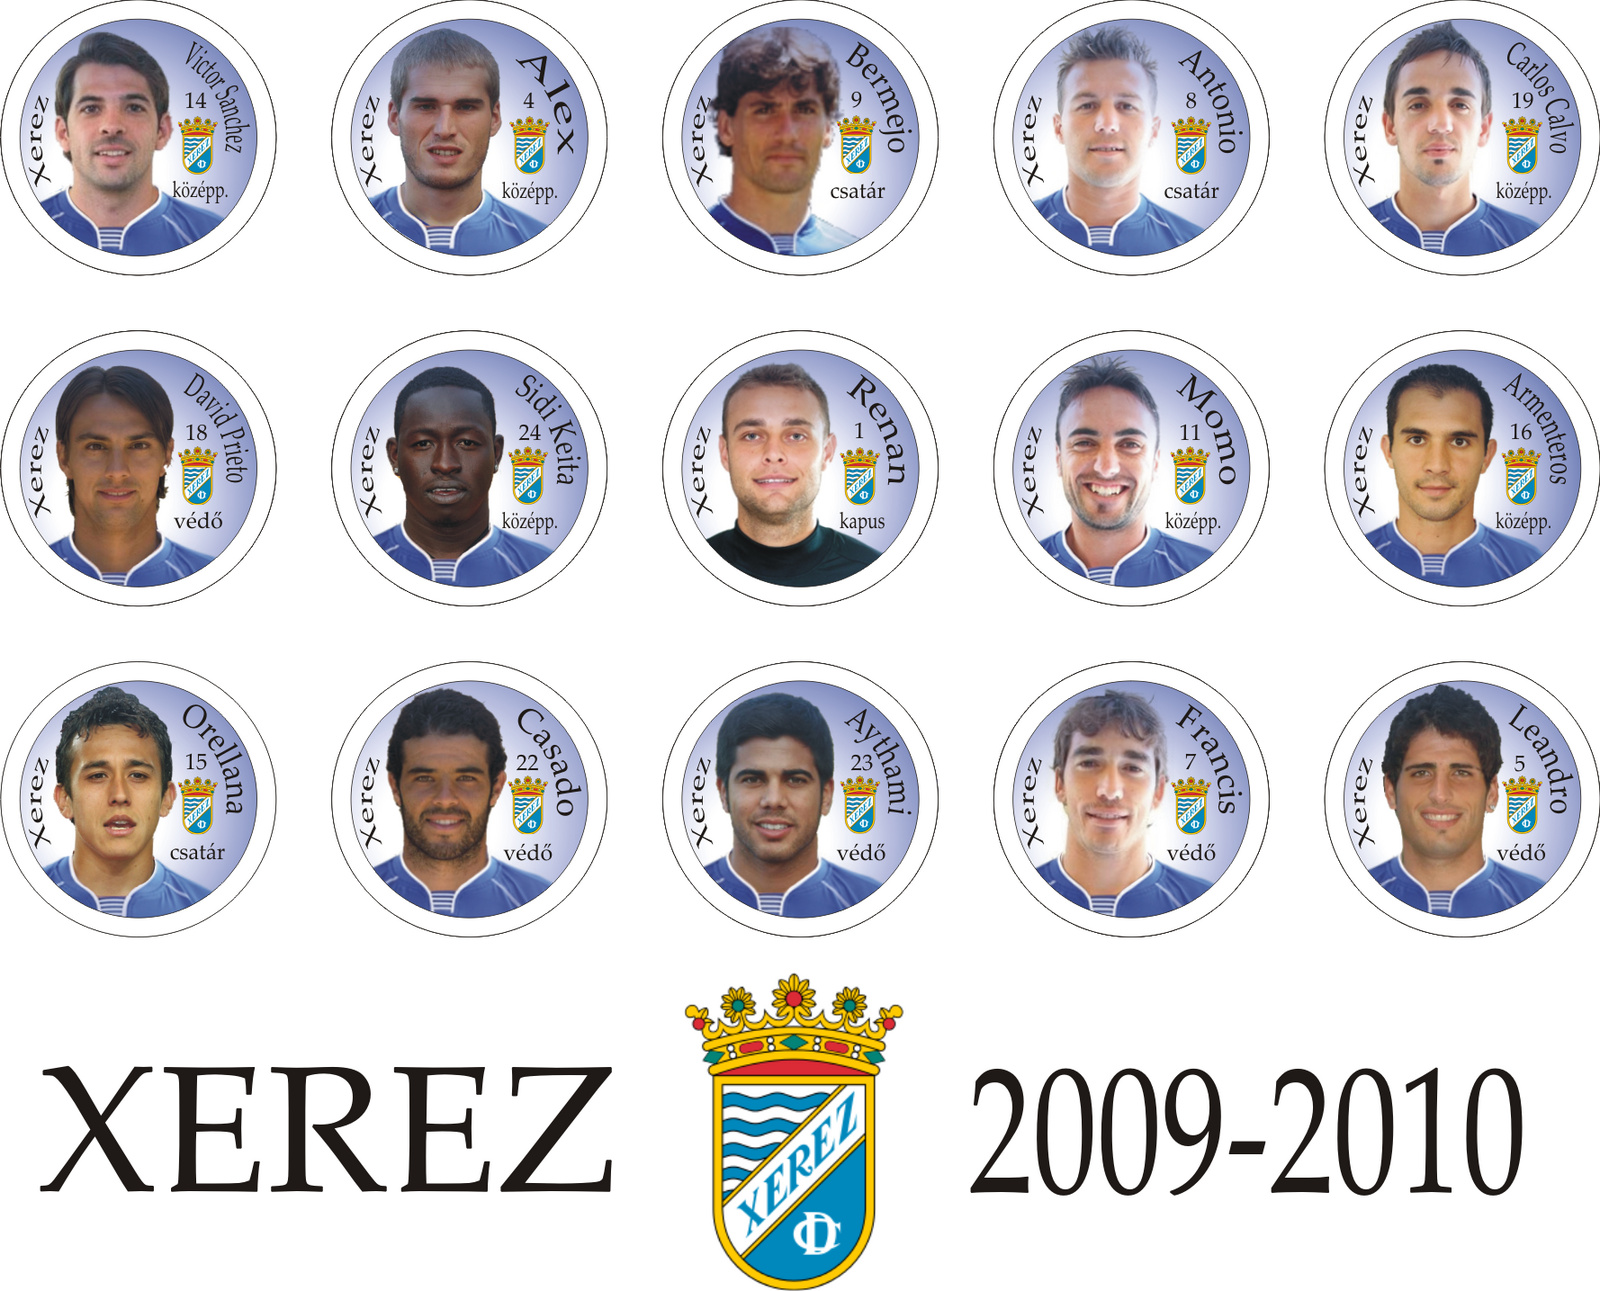 2009-2010 XEREZ.PNG